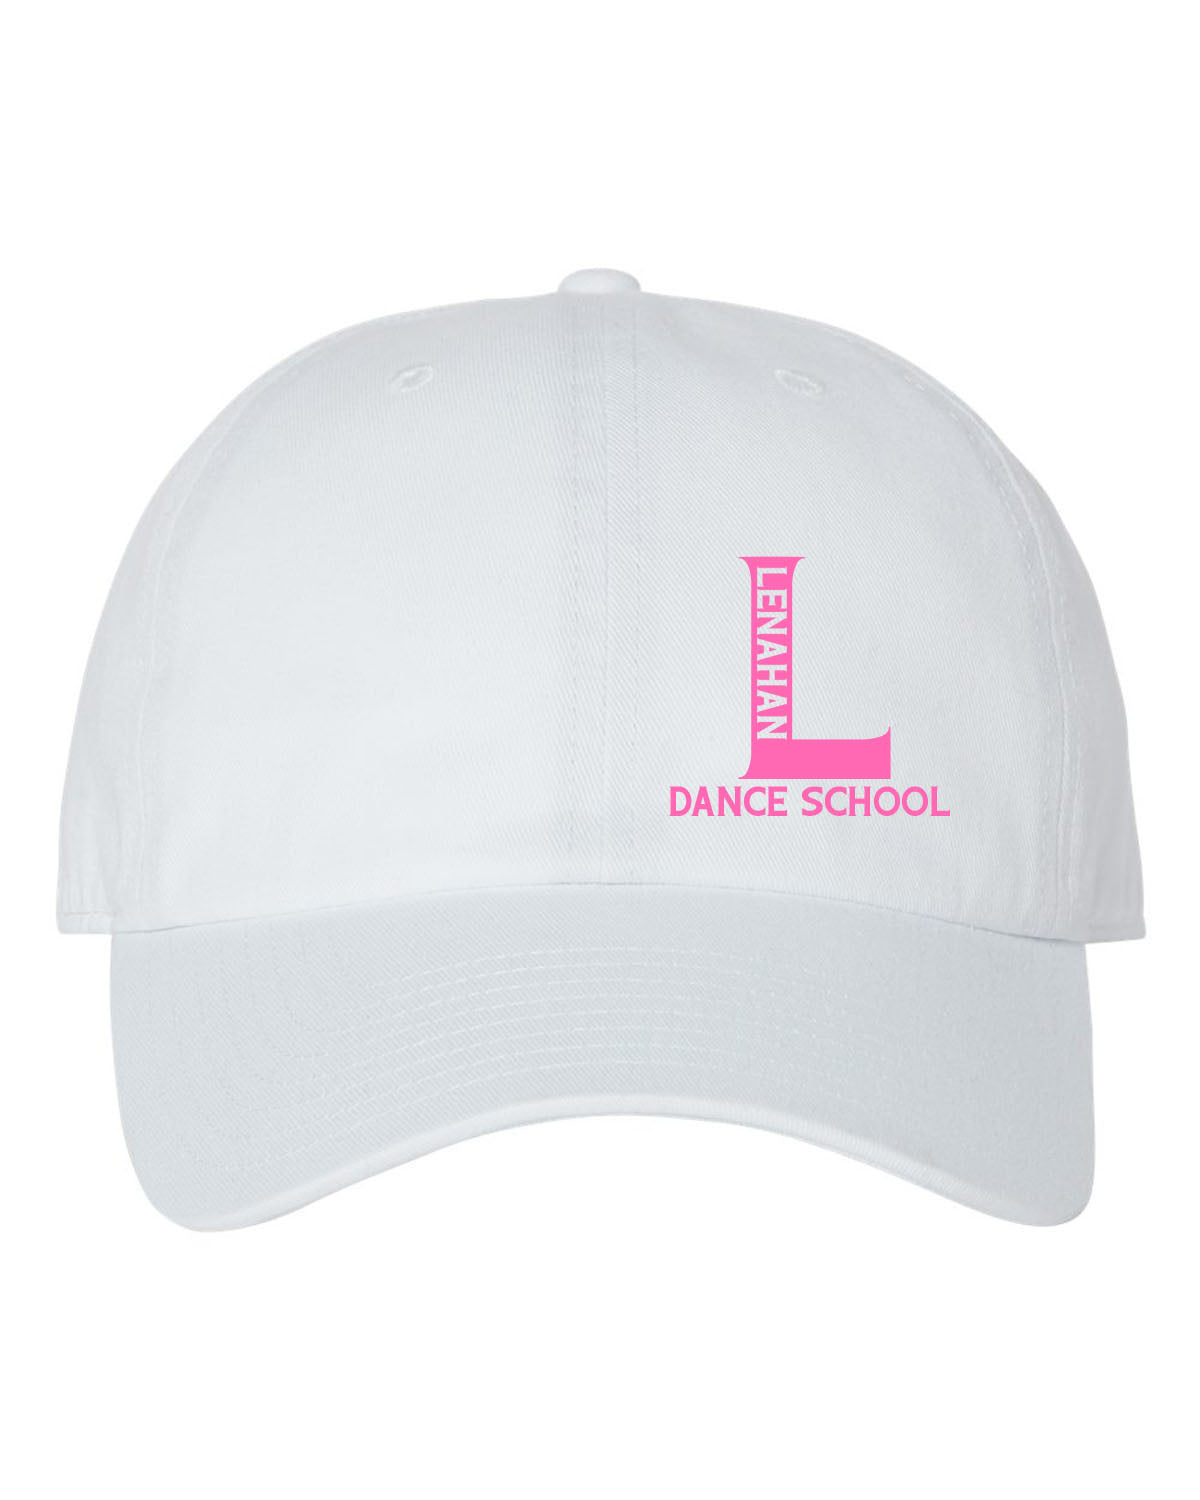 Lenahan Dance Design 1 Trucker Hat